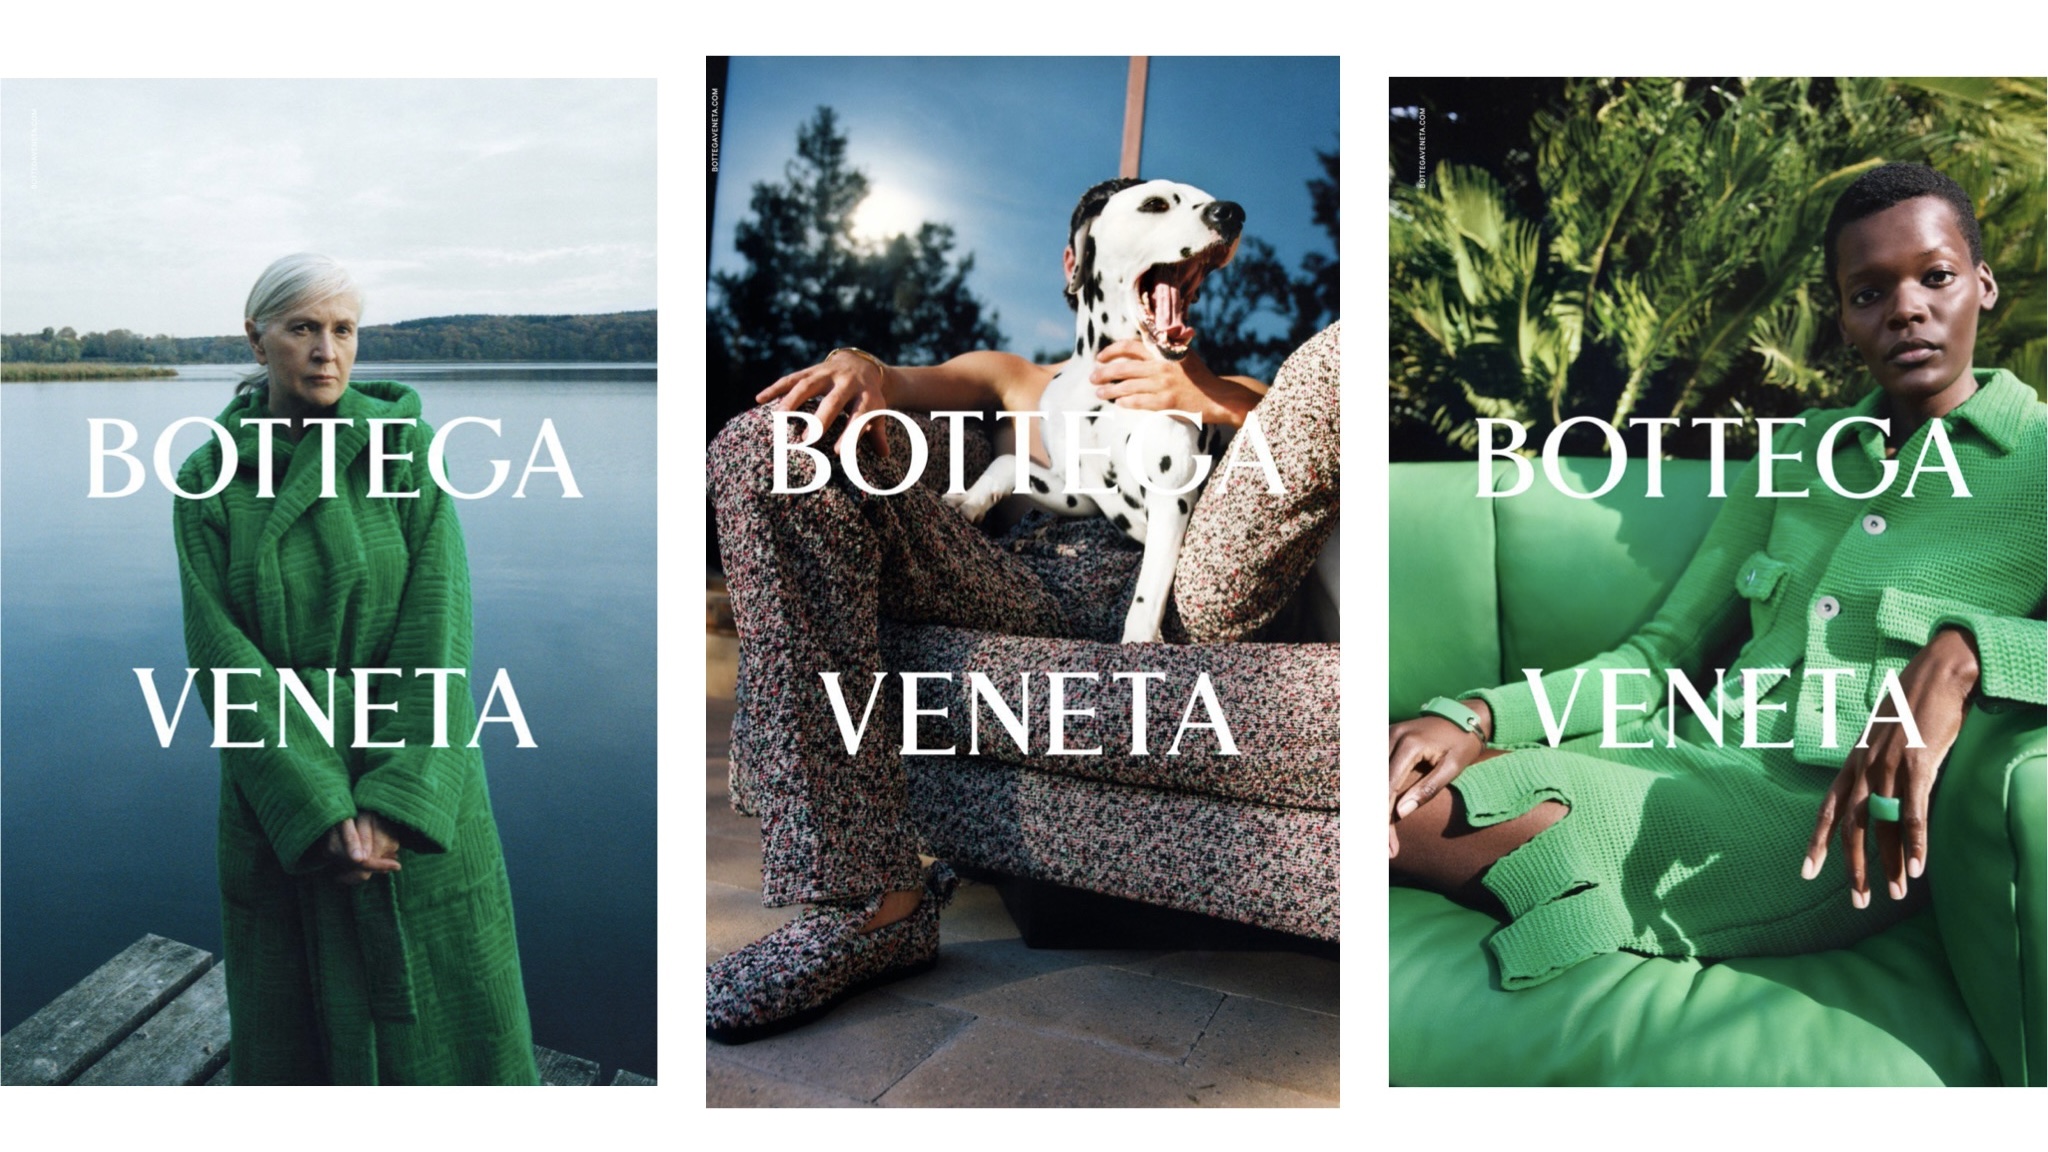 Художница Розмари Трокель (а еще далматинец и попугай) — в новой кампании Bottega Veneta